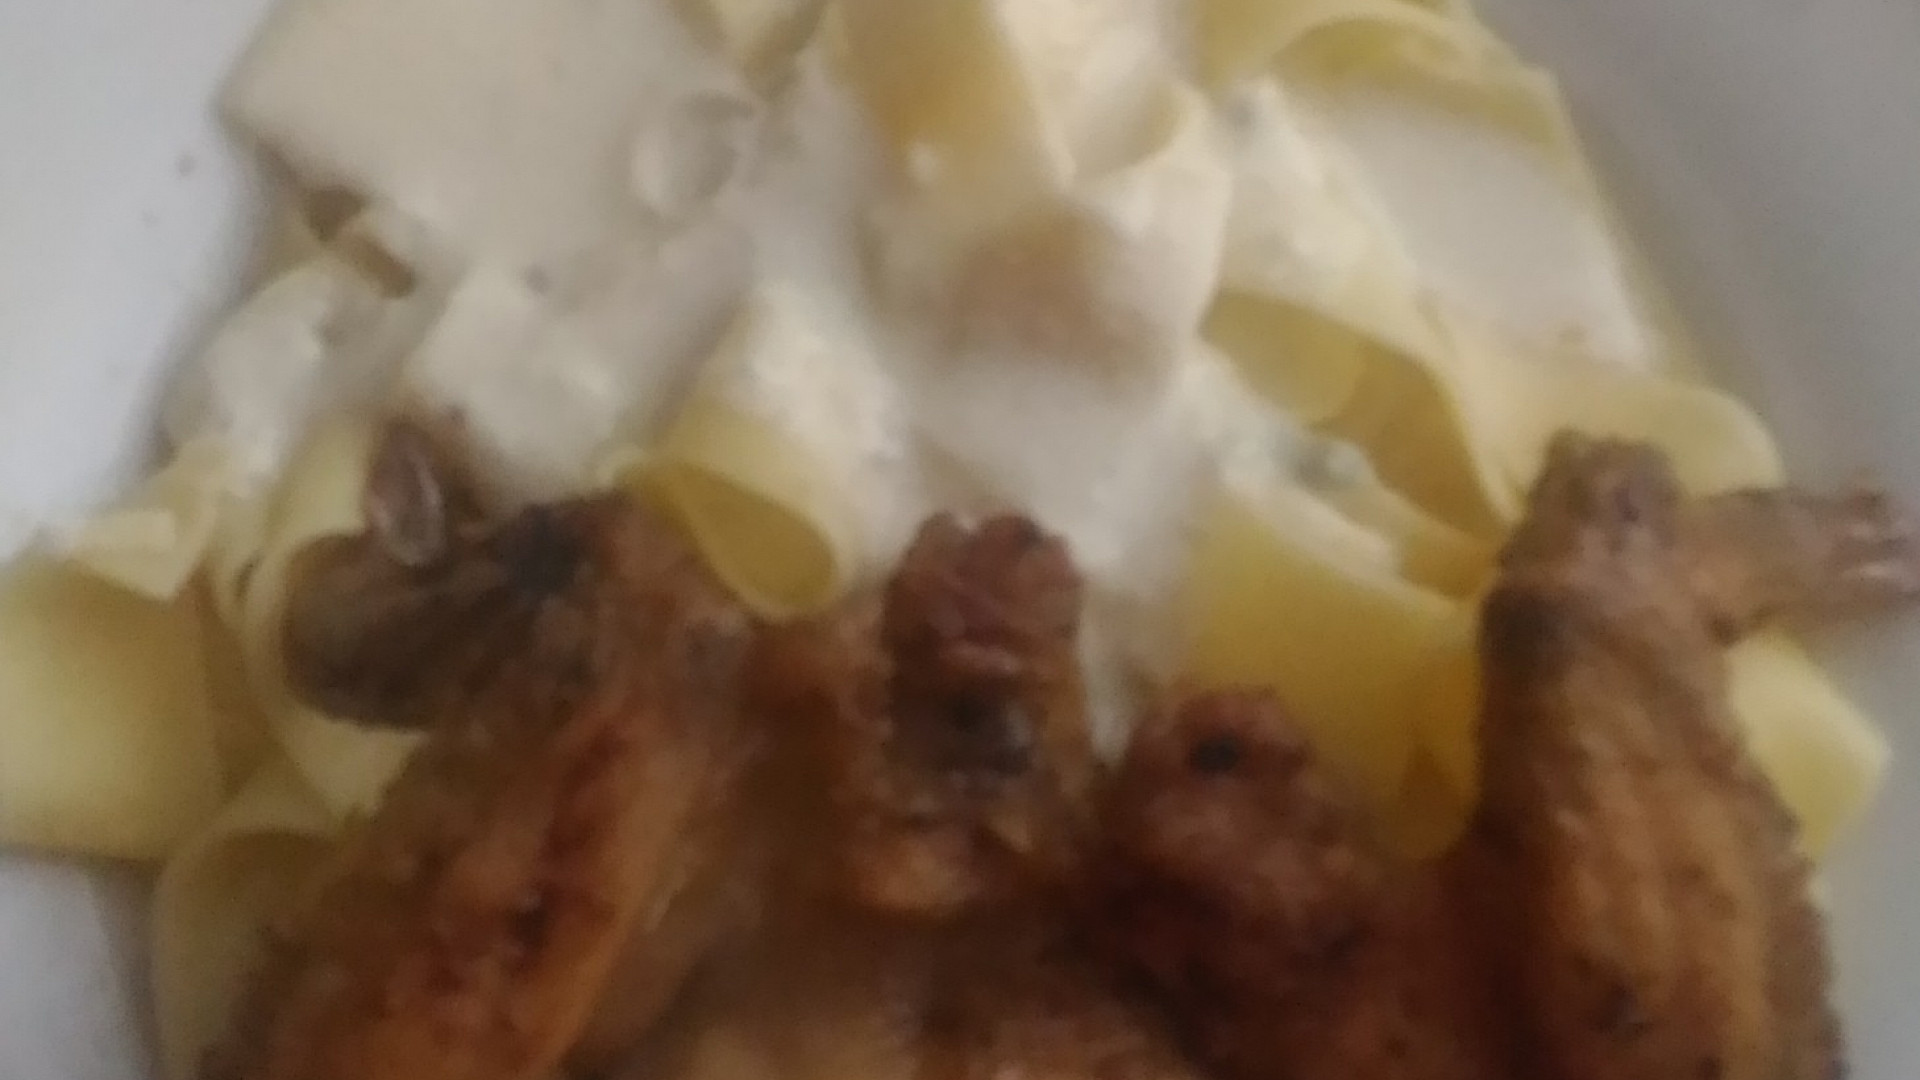 Kuřecí (křídla, paličky, prsa) s těstovinami pappardelle a omáčkou z gorgonzoly